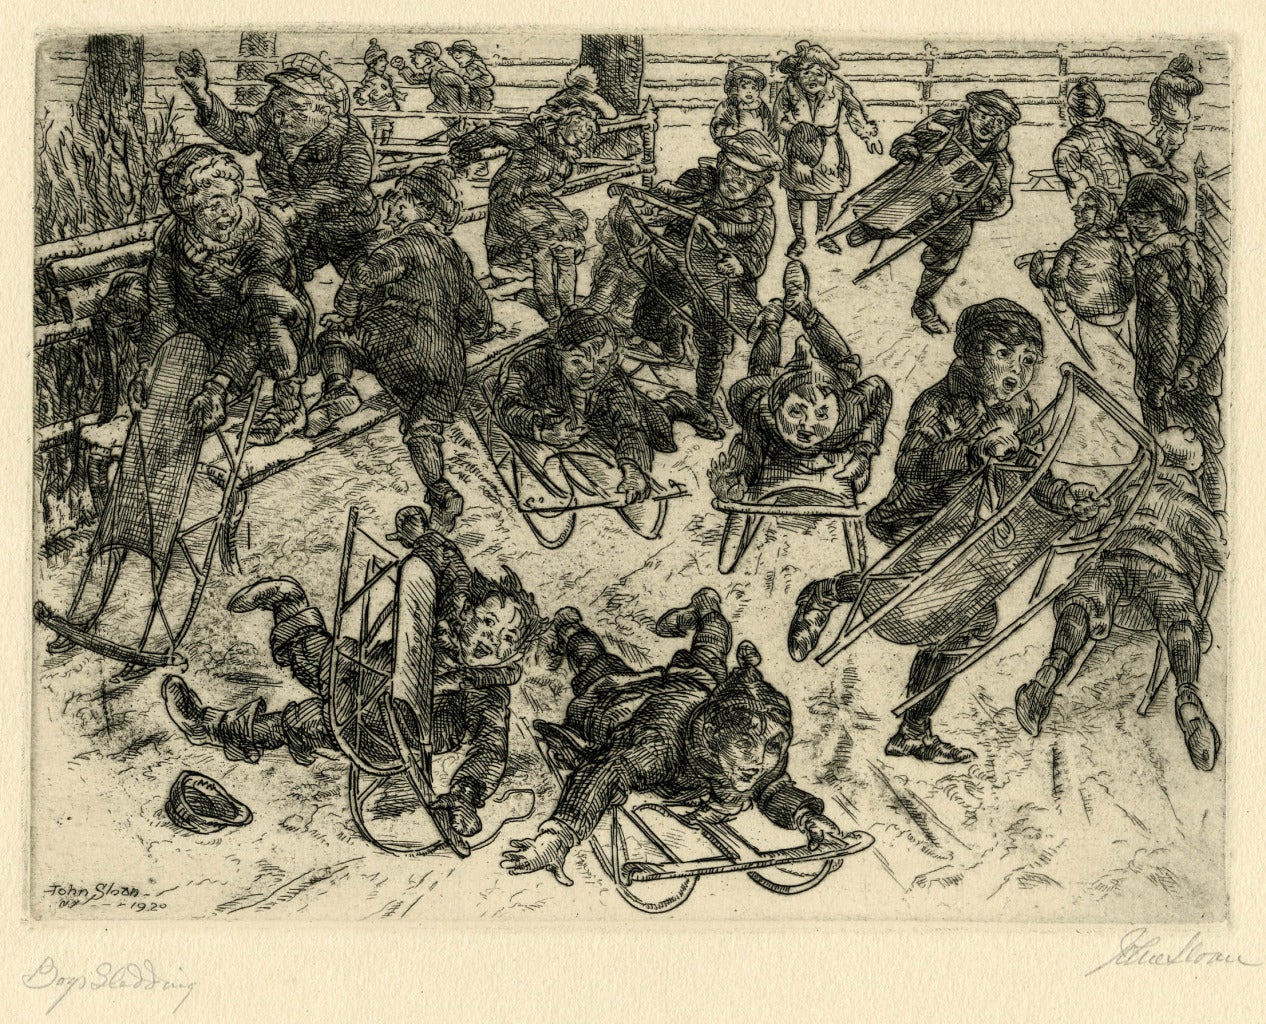 Boys Sledding - Print by John Sloan